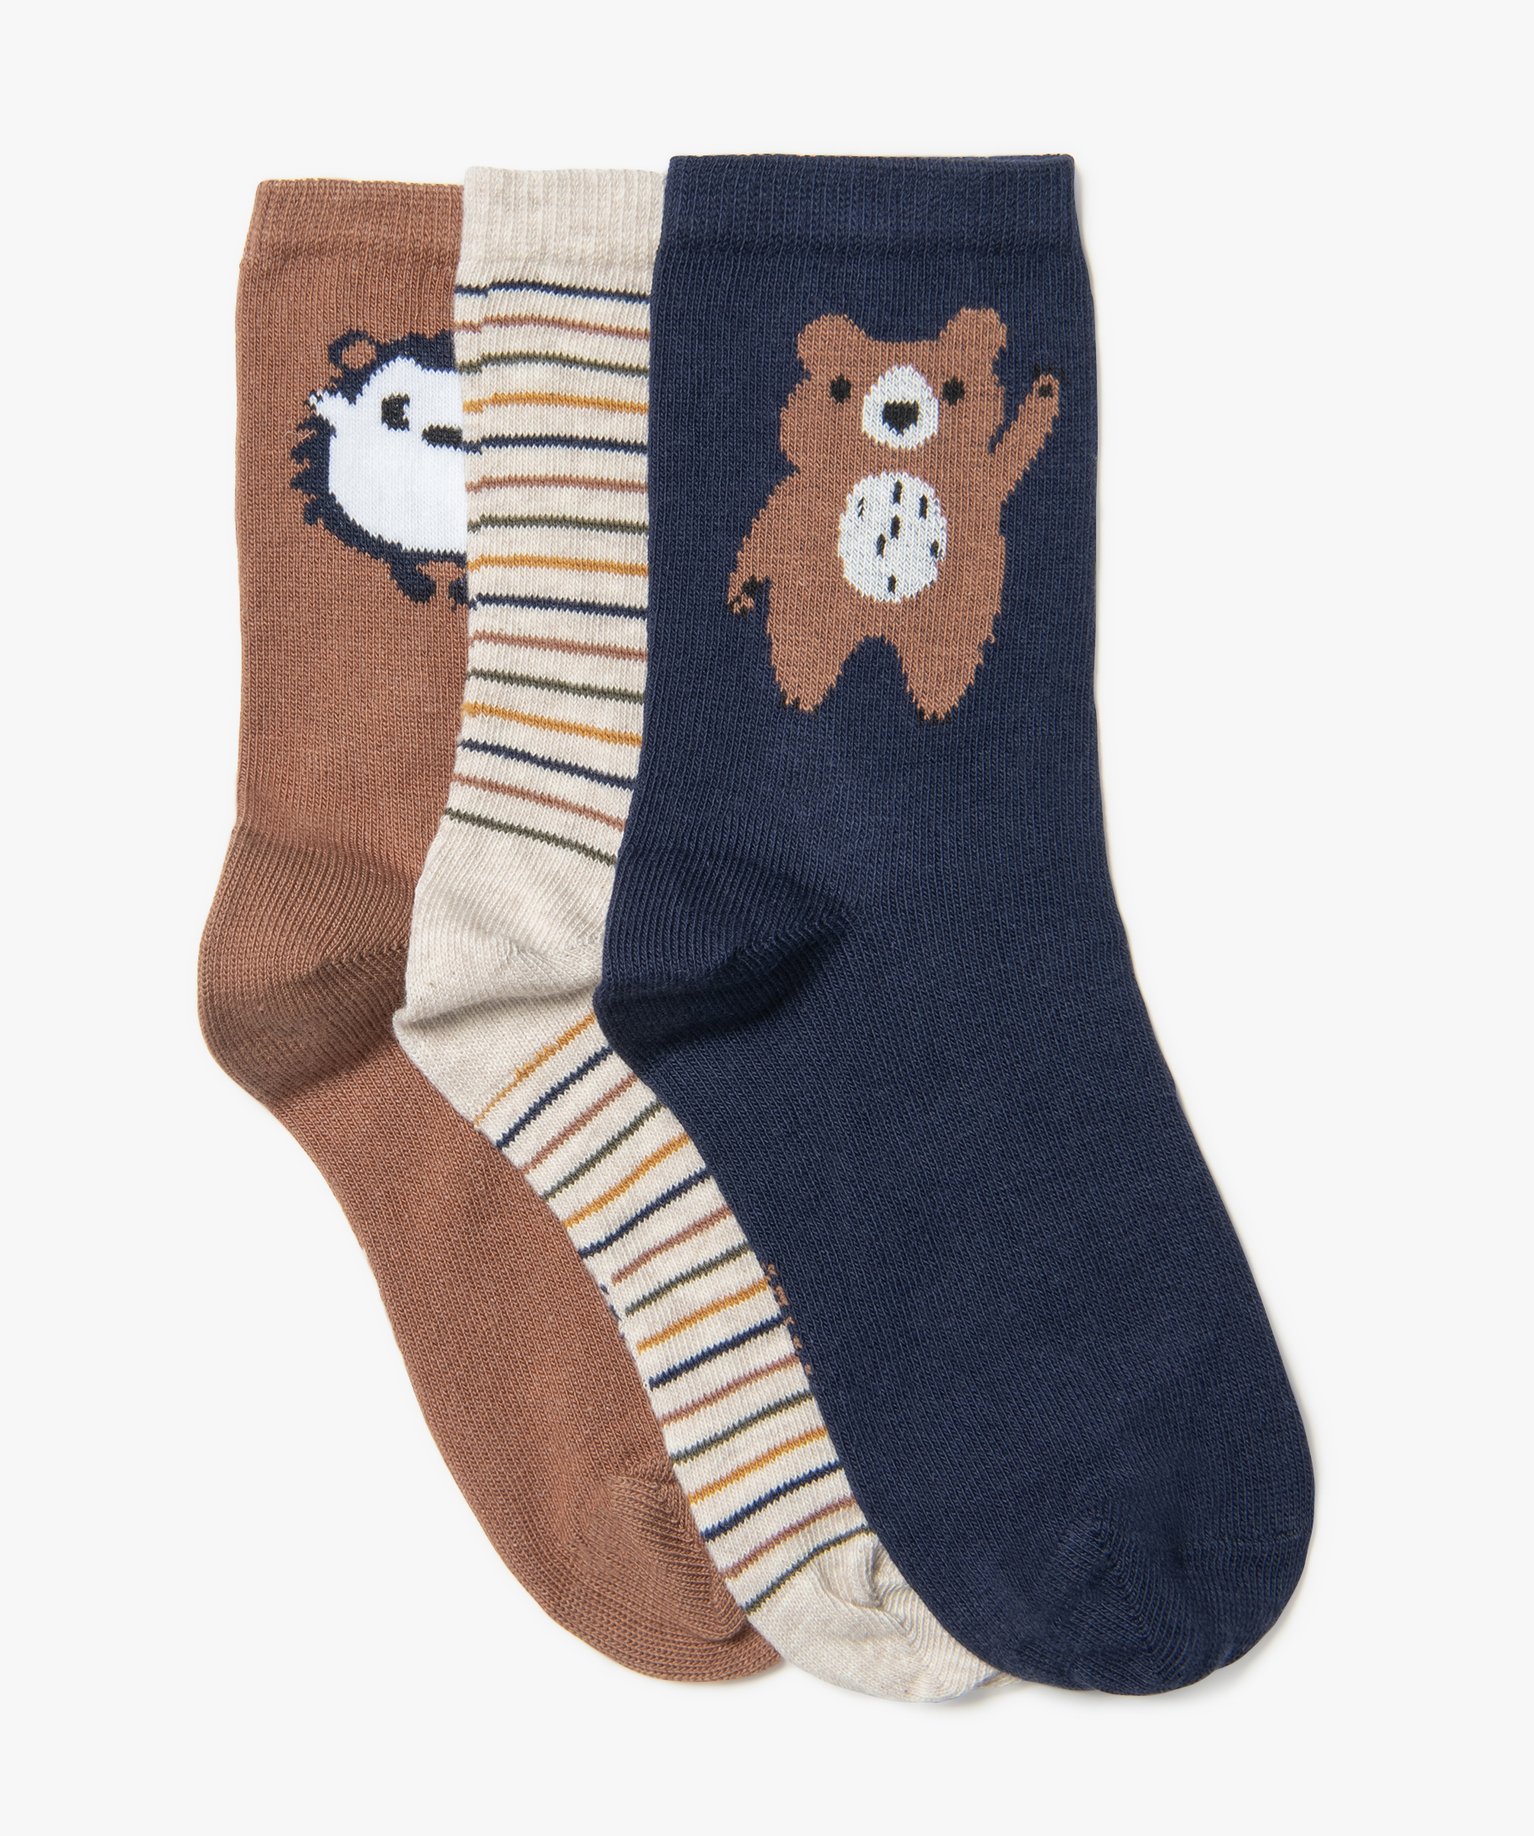 Chaussettes hautes avec motifs animaux garçon (lot de 3) - 31/34 - marron standard - GEMO